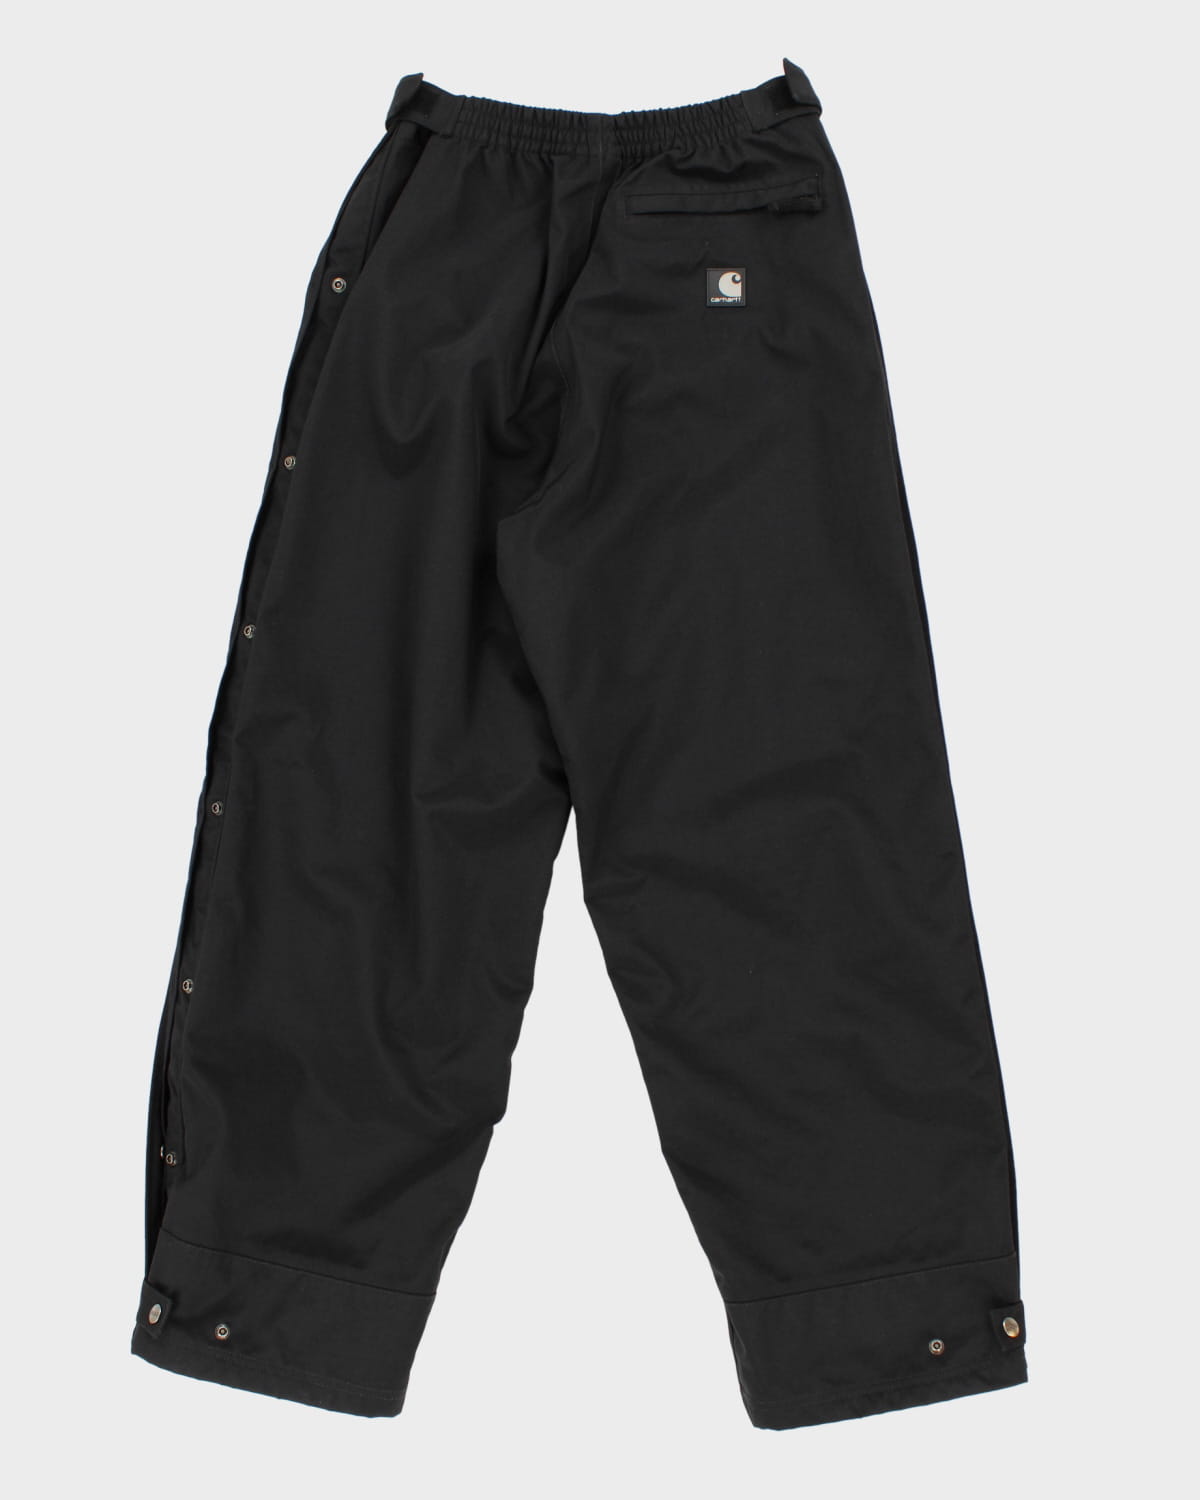 Heavy Duty Black Carhartt Trousers